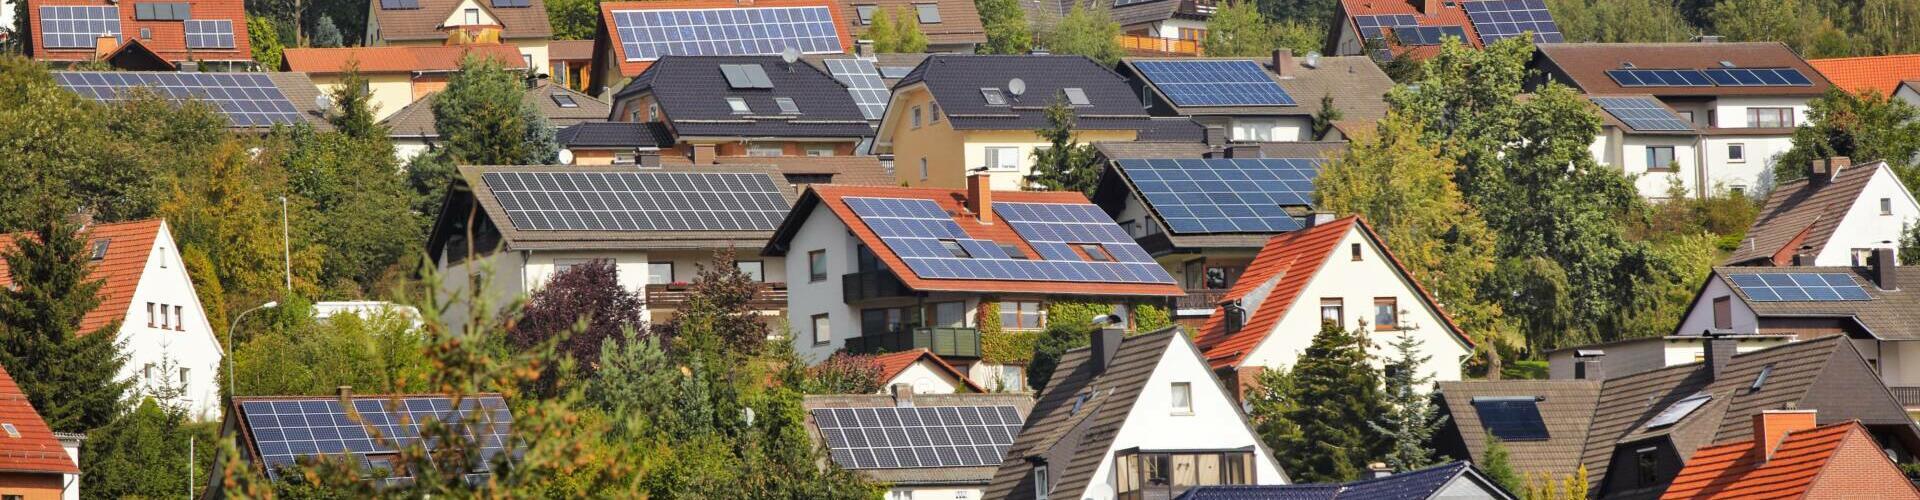 Enpal Solaranlagen Leasing